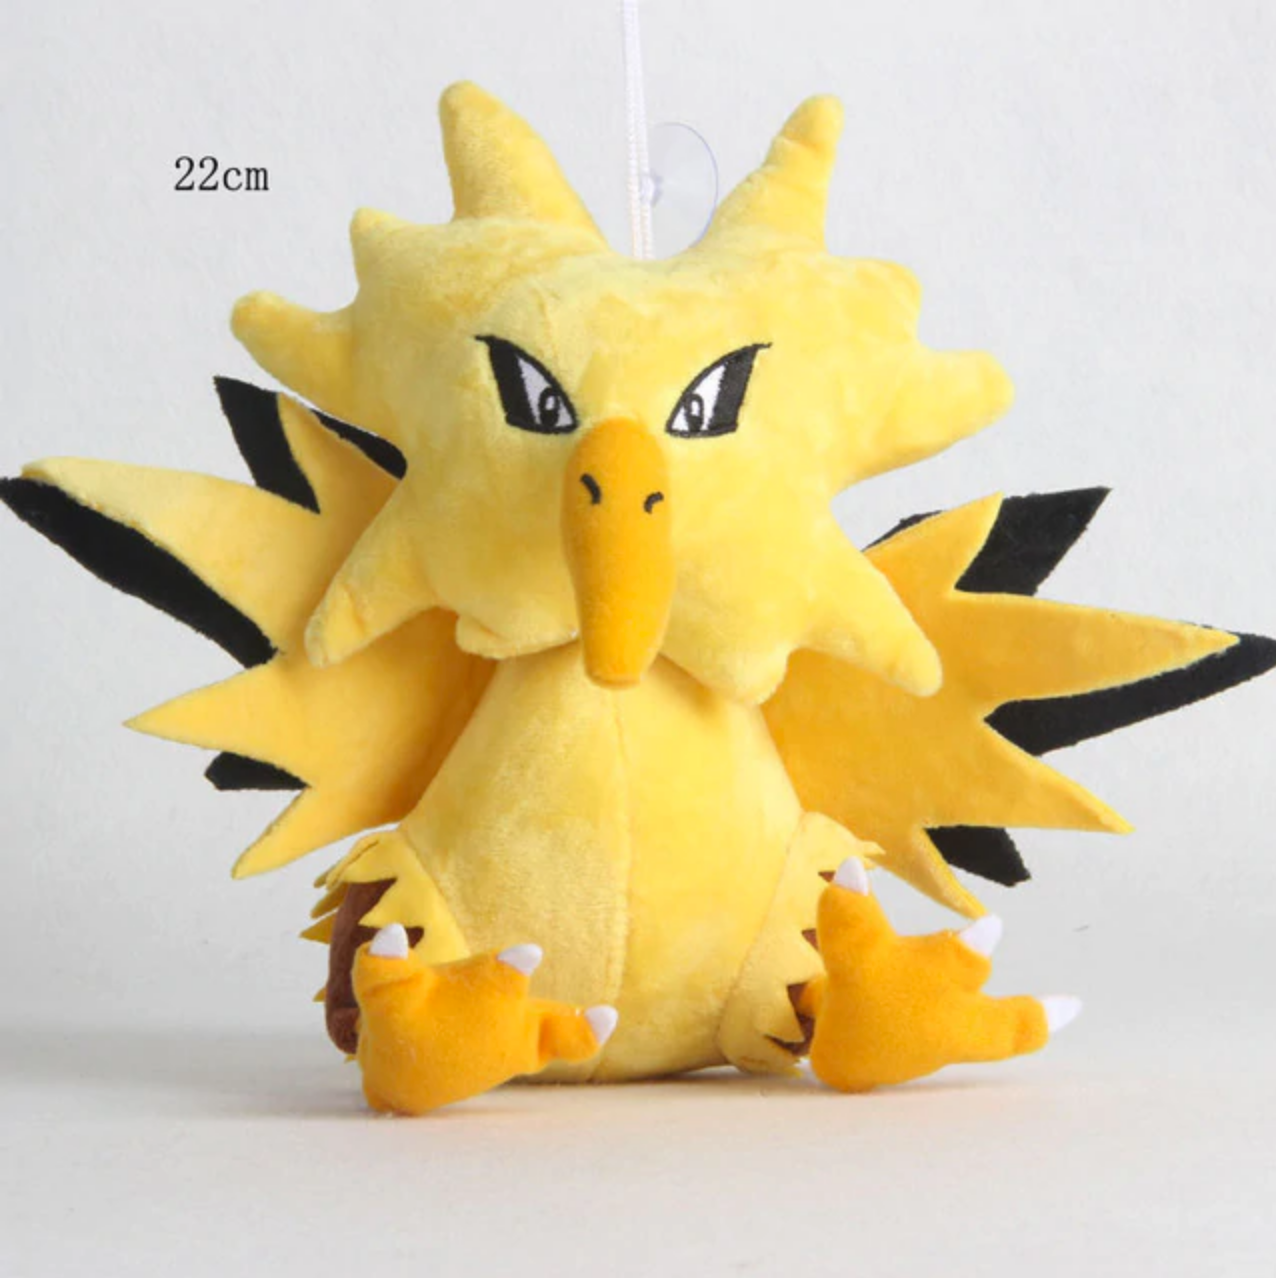 Zapdos - Pokemon Knuffel met zuignap 22cm (ophangbaar)